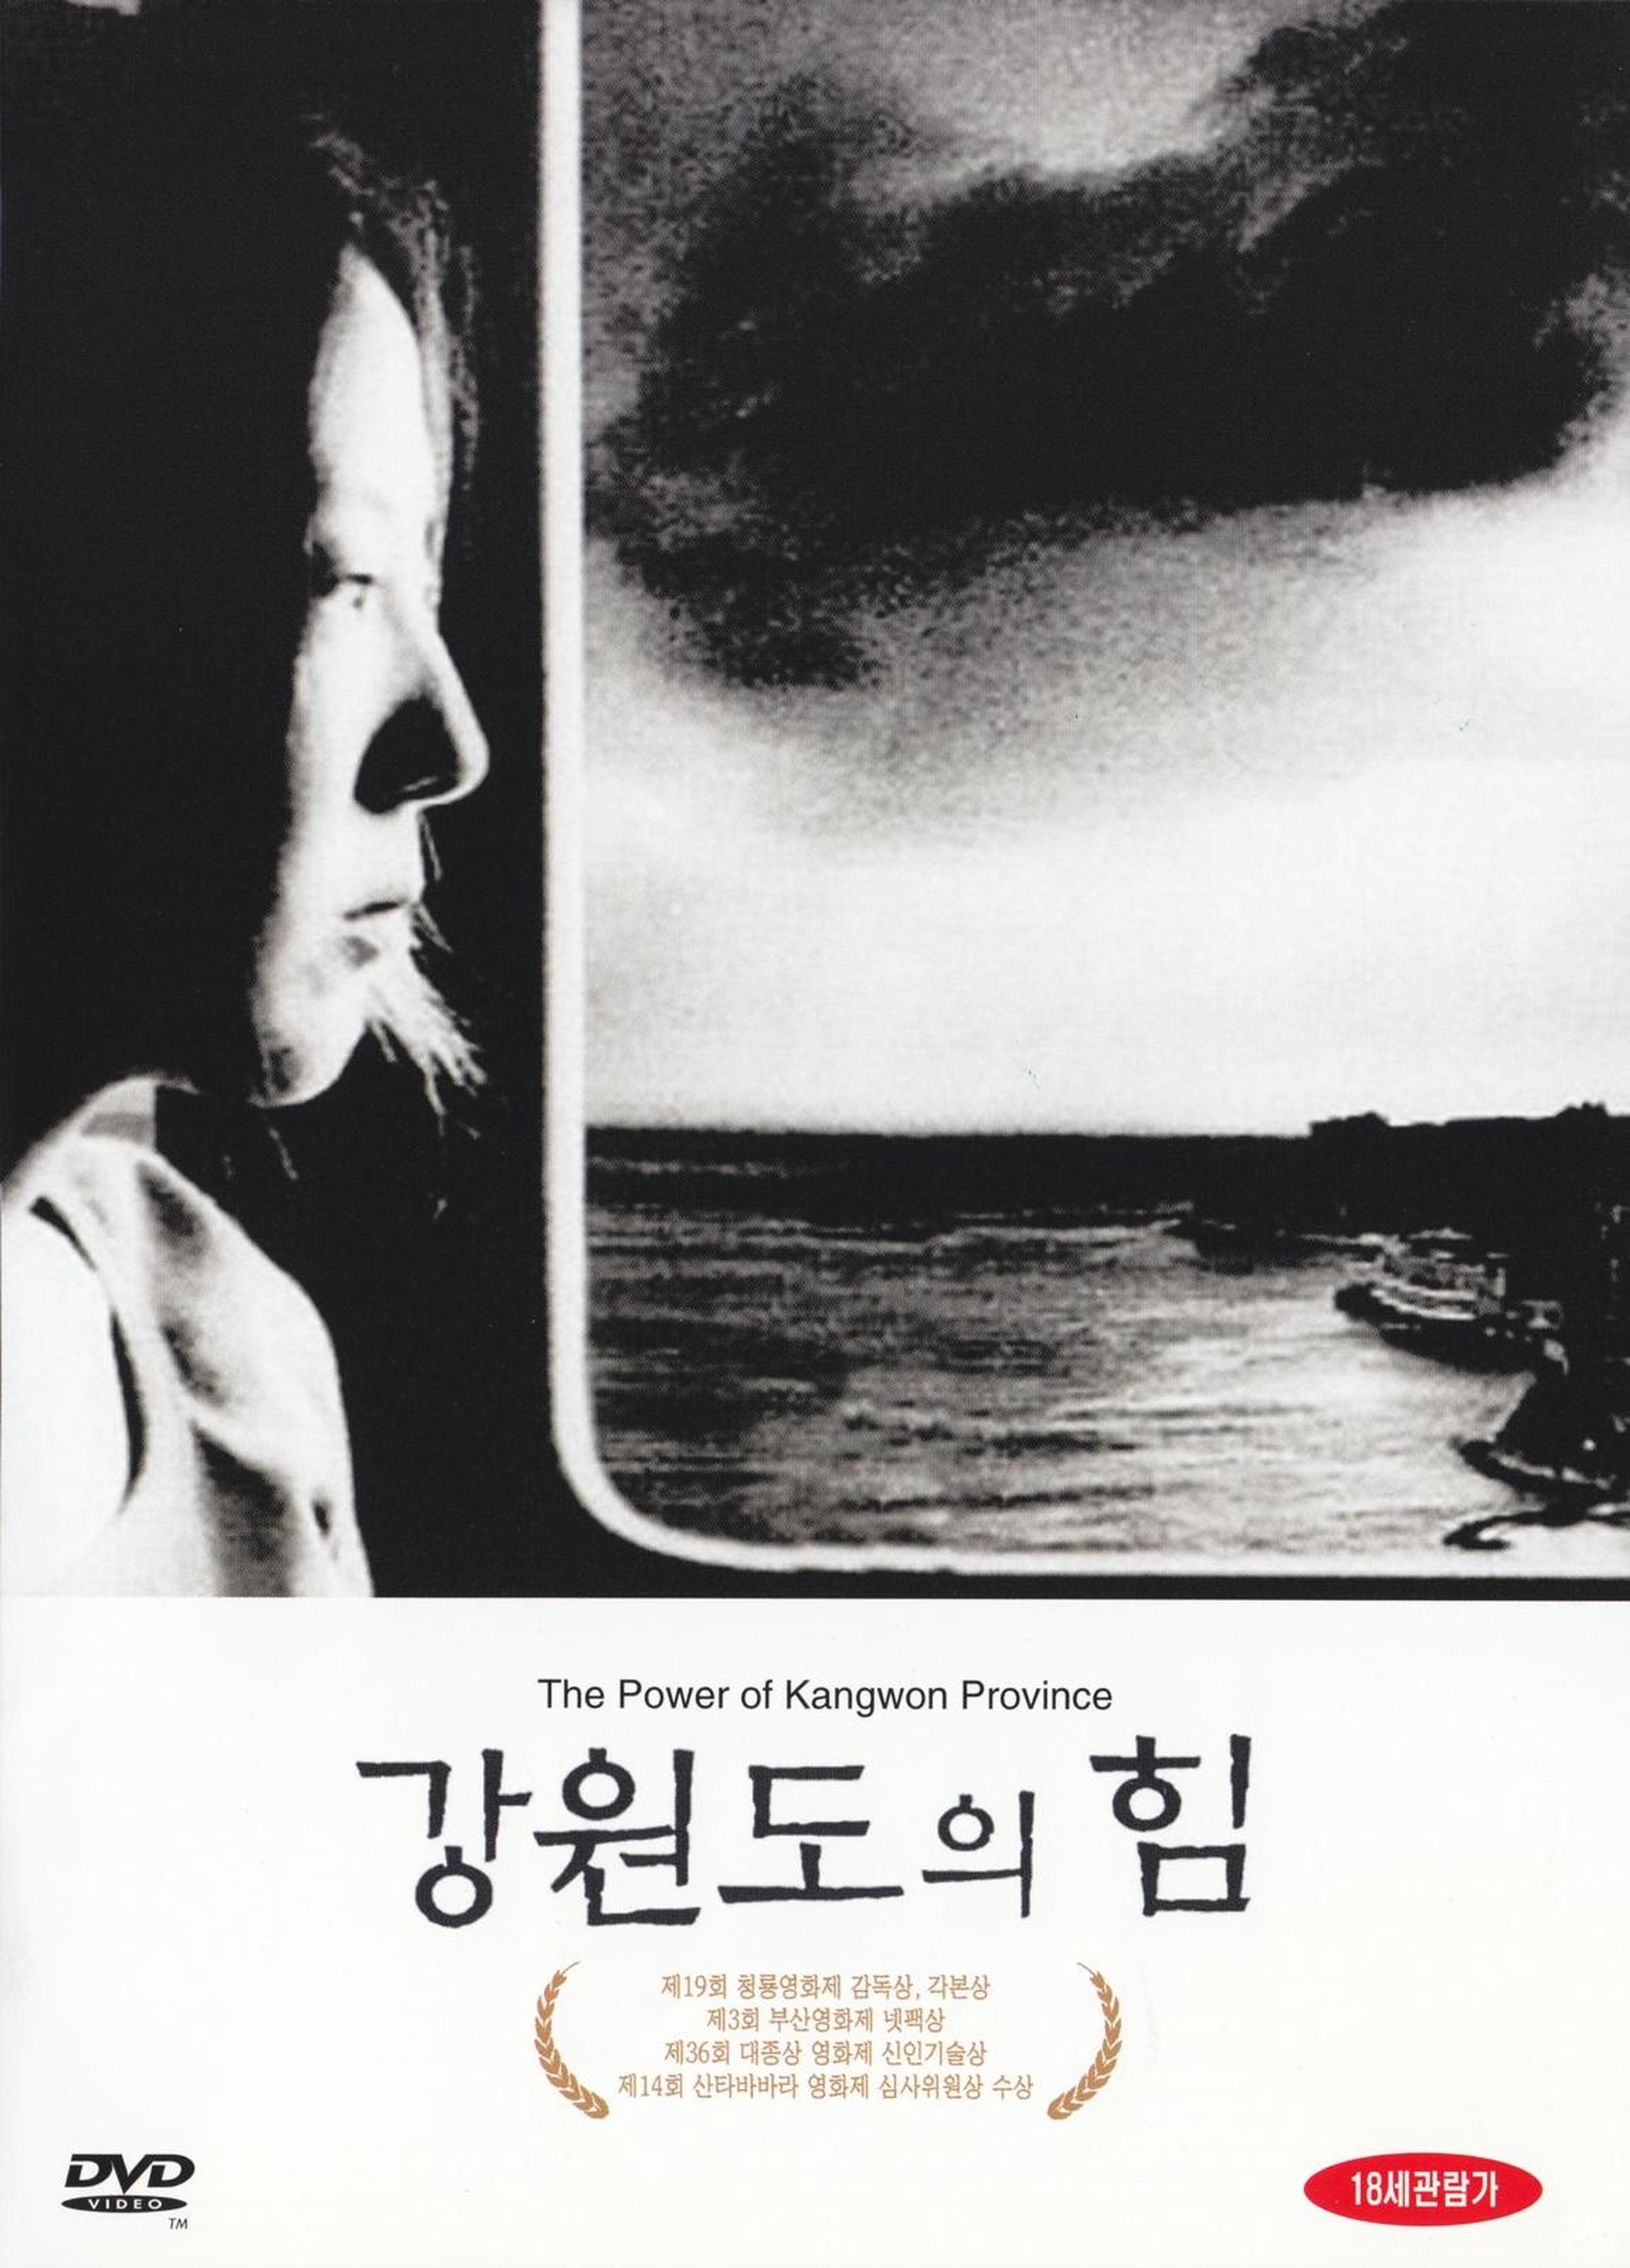 【1990-2000】《江原道之力》 (1998)导演洪尚秀。入围第51届戛纳电影节一种关注单元提名。